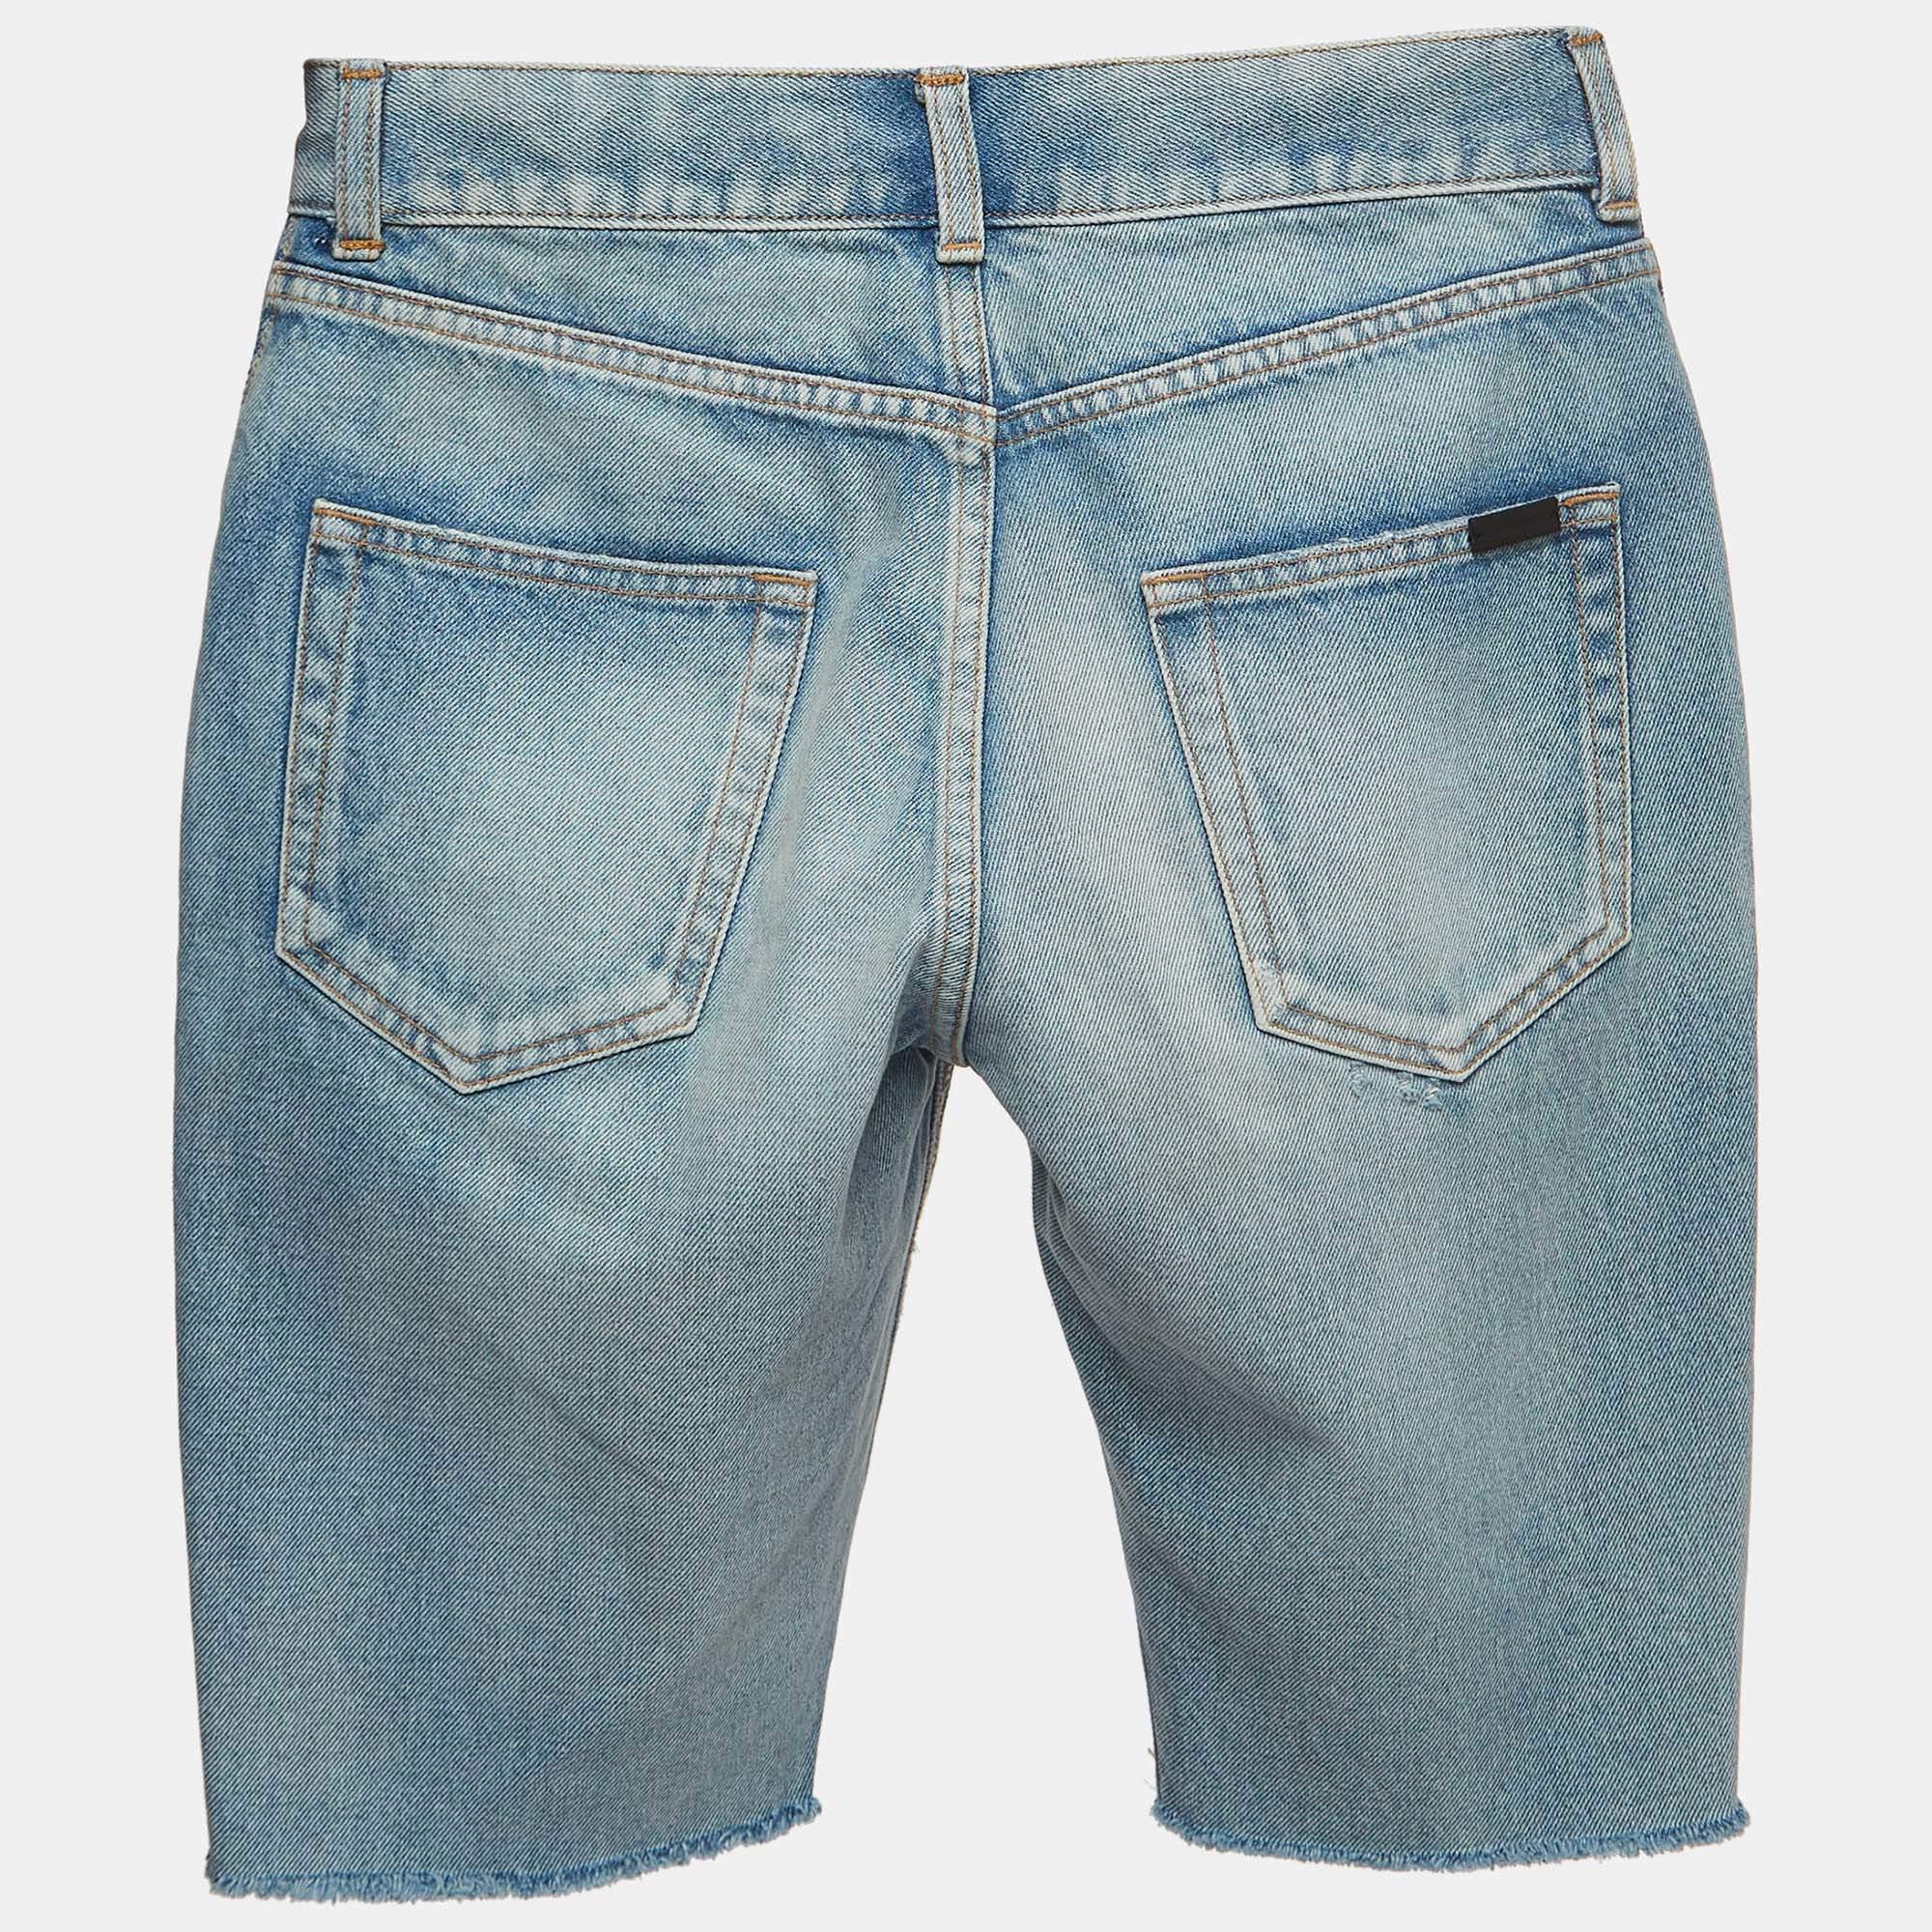 Machen Sie es sich bequem mit diesen Shorts von Saint Laurent. Die Shorts sind aus Baumwolle gefertigt und haben ein schlichtes Design. Sie sind mit Gürtelschlaufen in der Taille, einem Knopfverschluss und mehreren Taschen ausgestattet.

